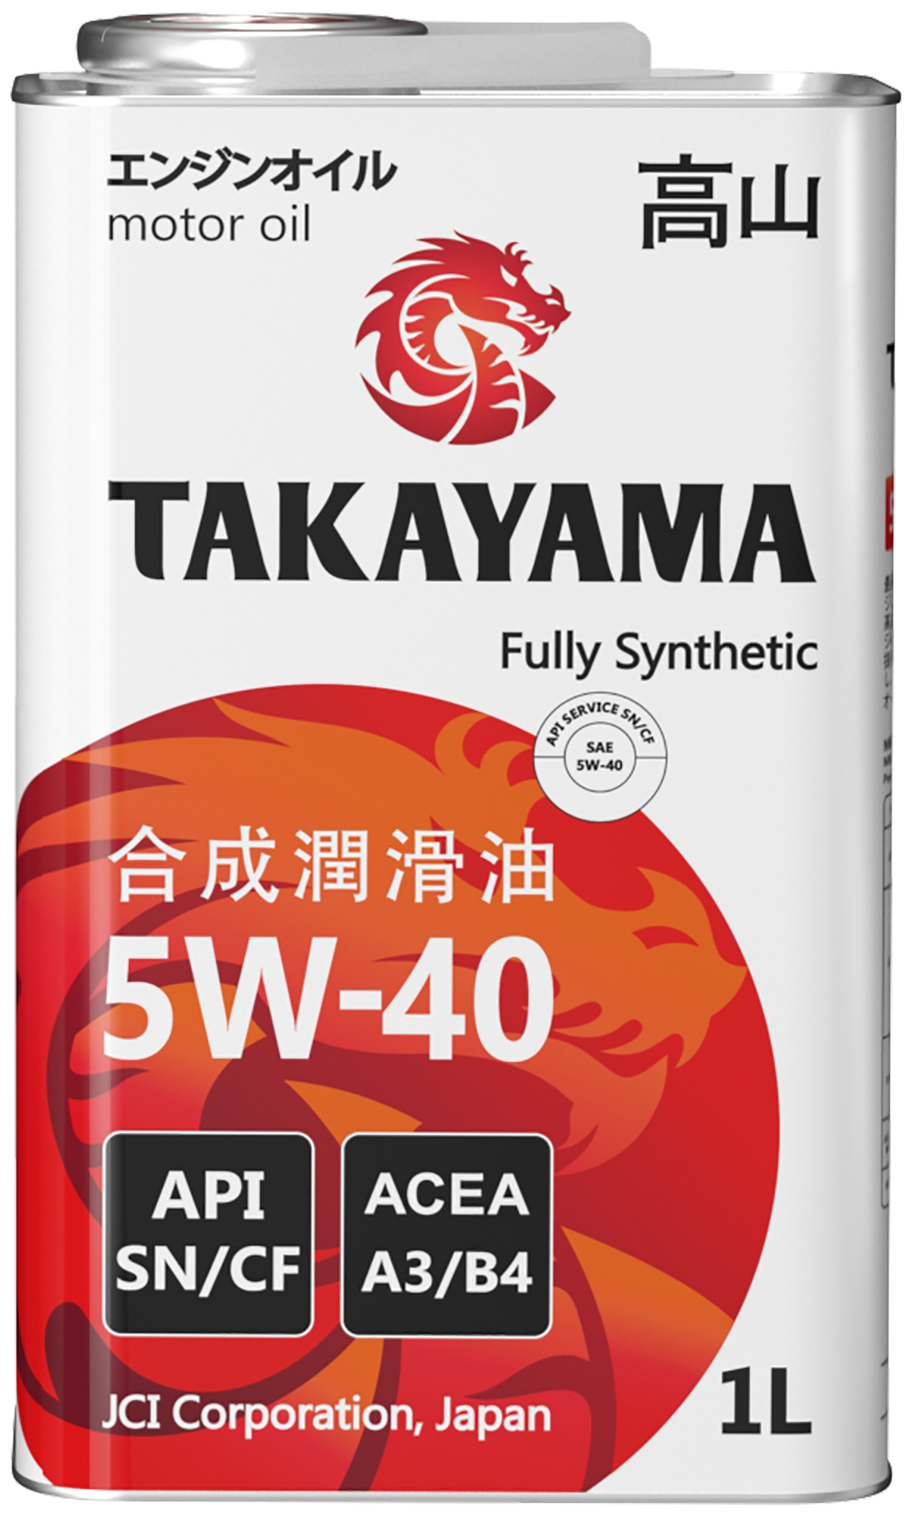 Масло токояма 5w-40 характеристики —  по низкой цене на  .